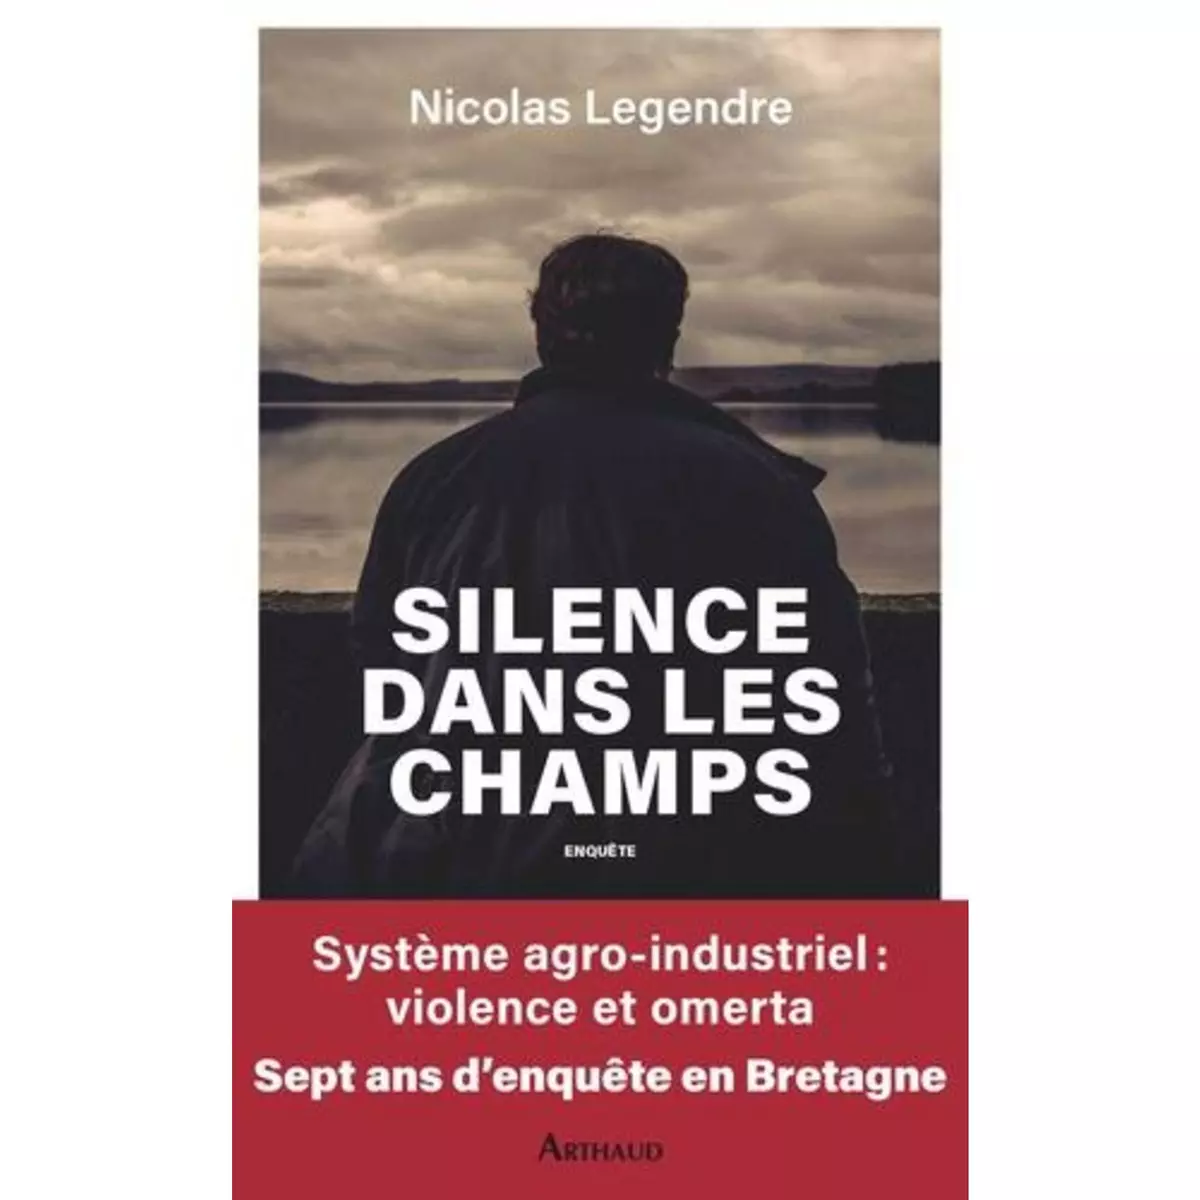  SILENCE DANS LES CHAMPS, Legendre Nicolas